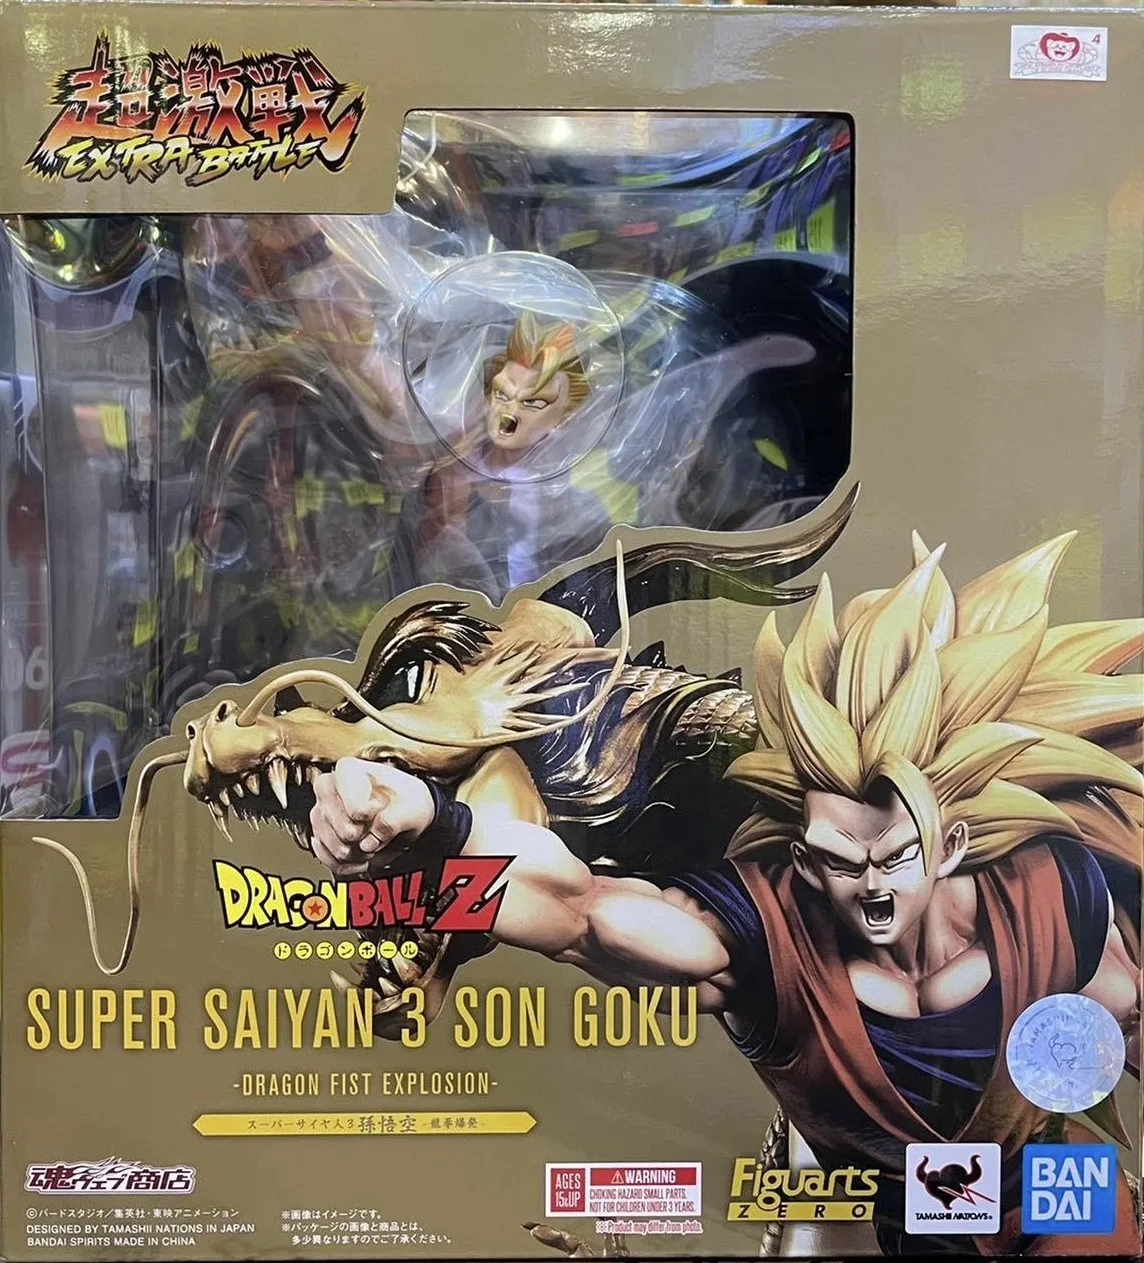 Super Saiyan 3 Goku  Goku super, Anime dragon ball goku, Anime dragon ball  super